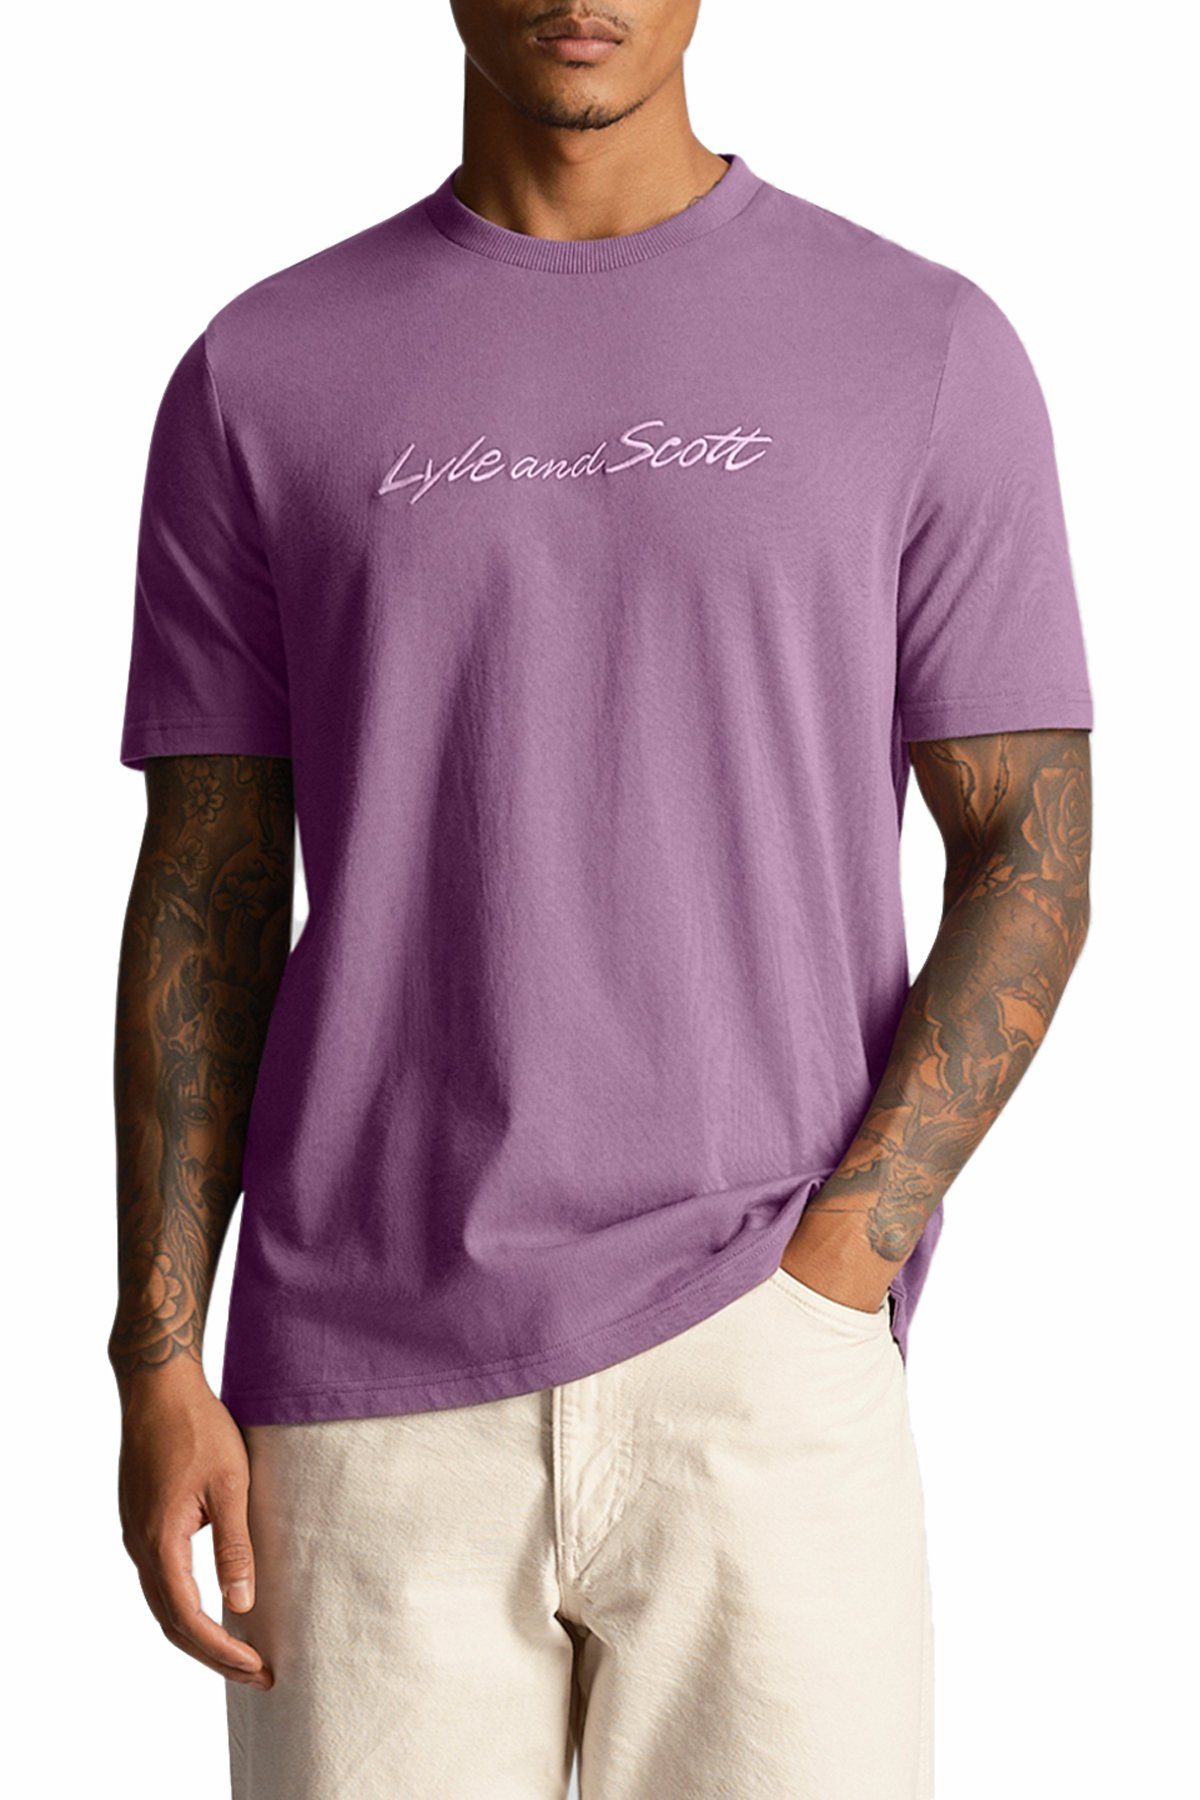 Lyle & Scott T-Shirt Mit Brustprint Fliederfarben/Beige